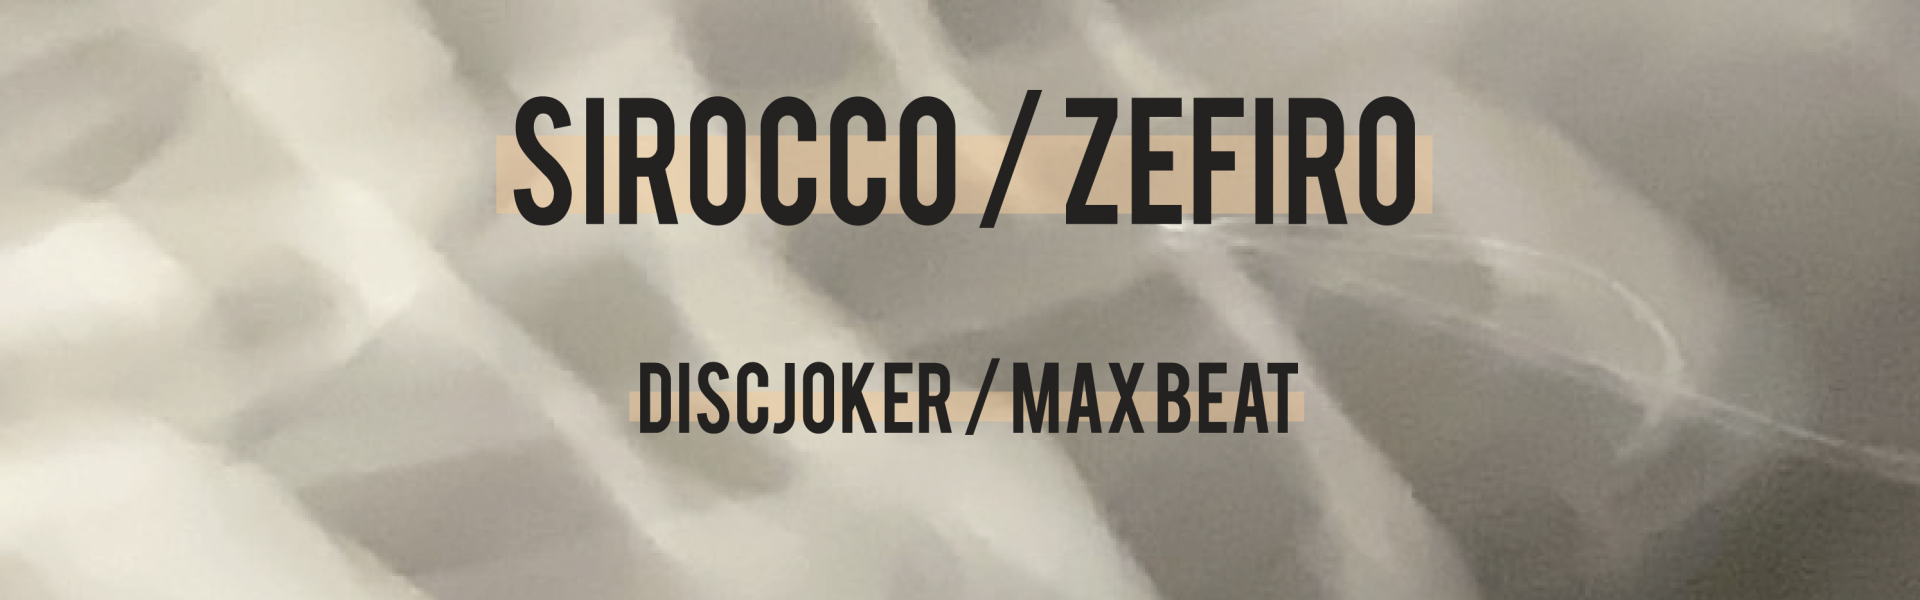 https://www.rekrecords.com/wp-content/uploads/2015/07/sirocco_zefiro.png